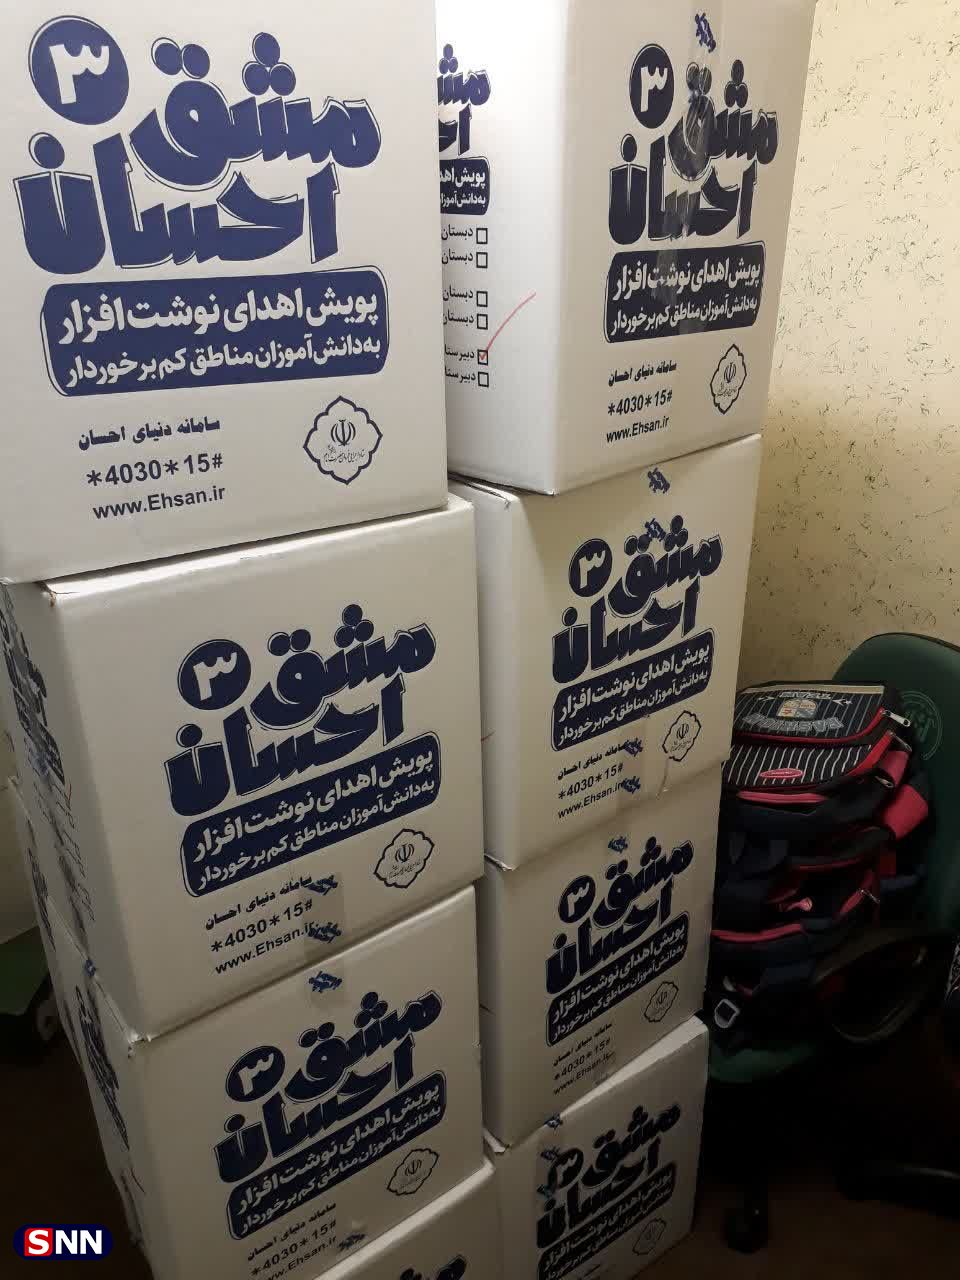 ۲۵۰ بسته نوشت افزار با کمک ستاد اجرایی فرمان امام در بین دانش آموزان همدانی توزیع شد